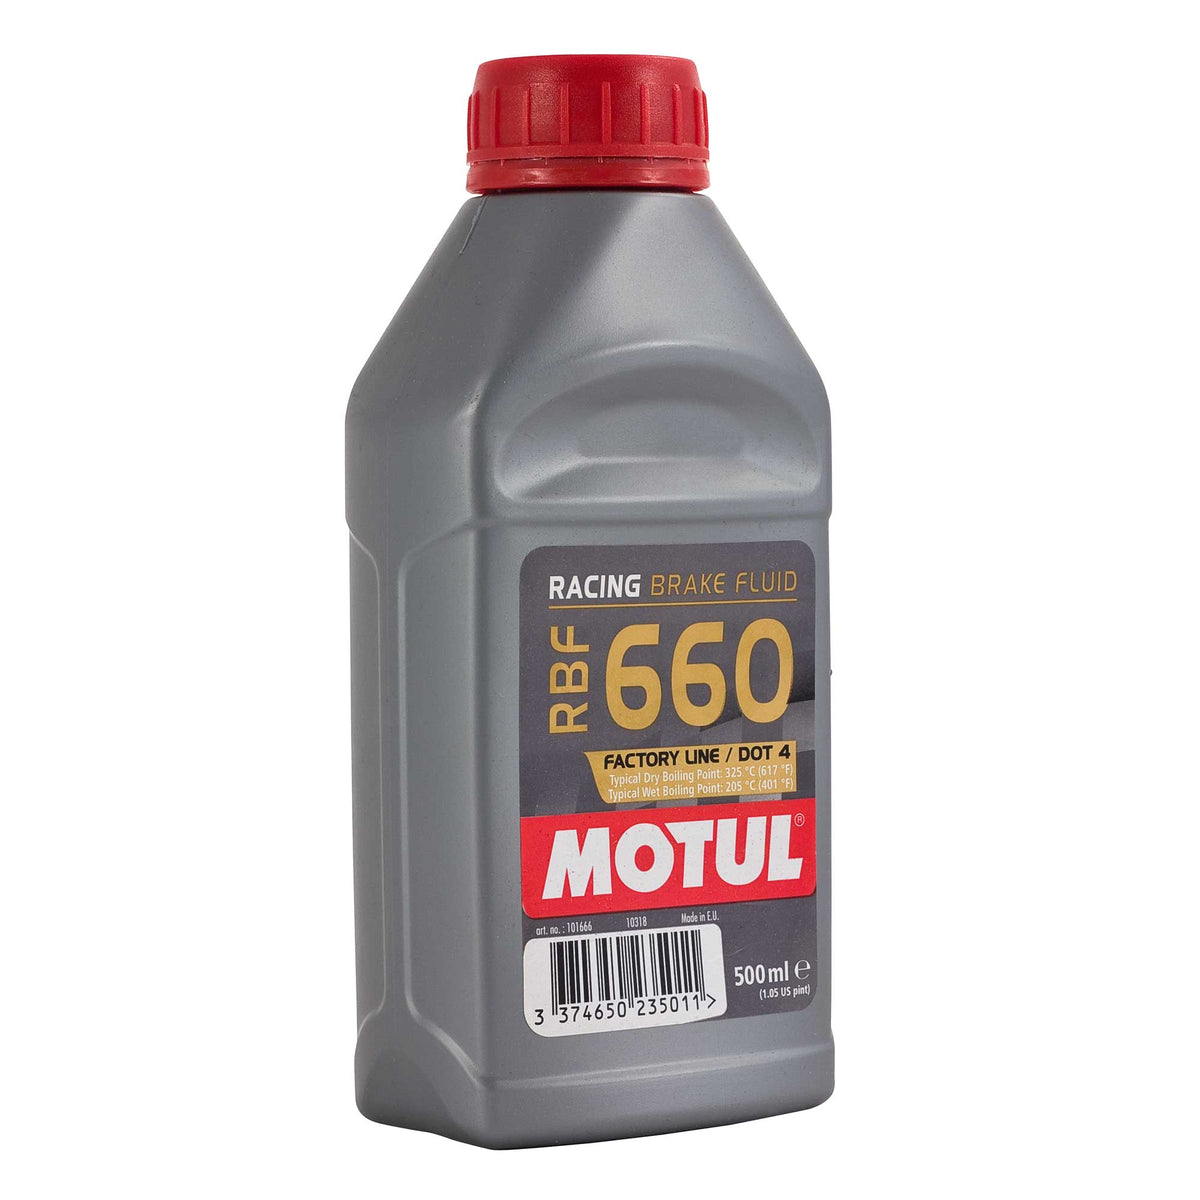 Brembo Premium Brake Fluid DOT 4 Low Viscosity 1000ml Bottle